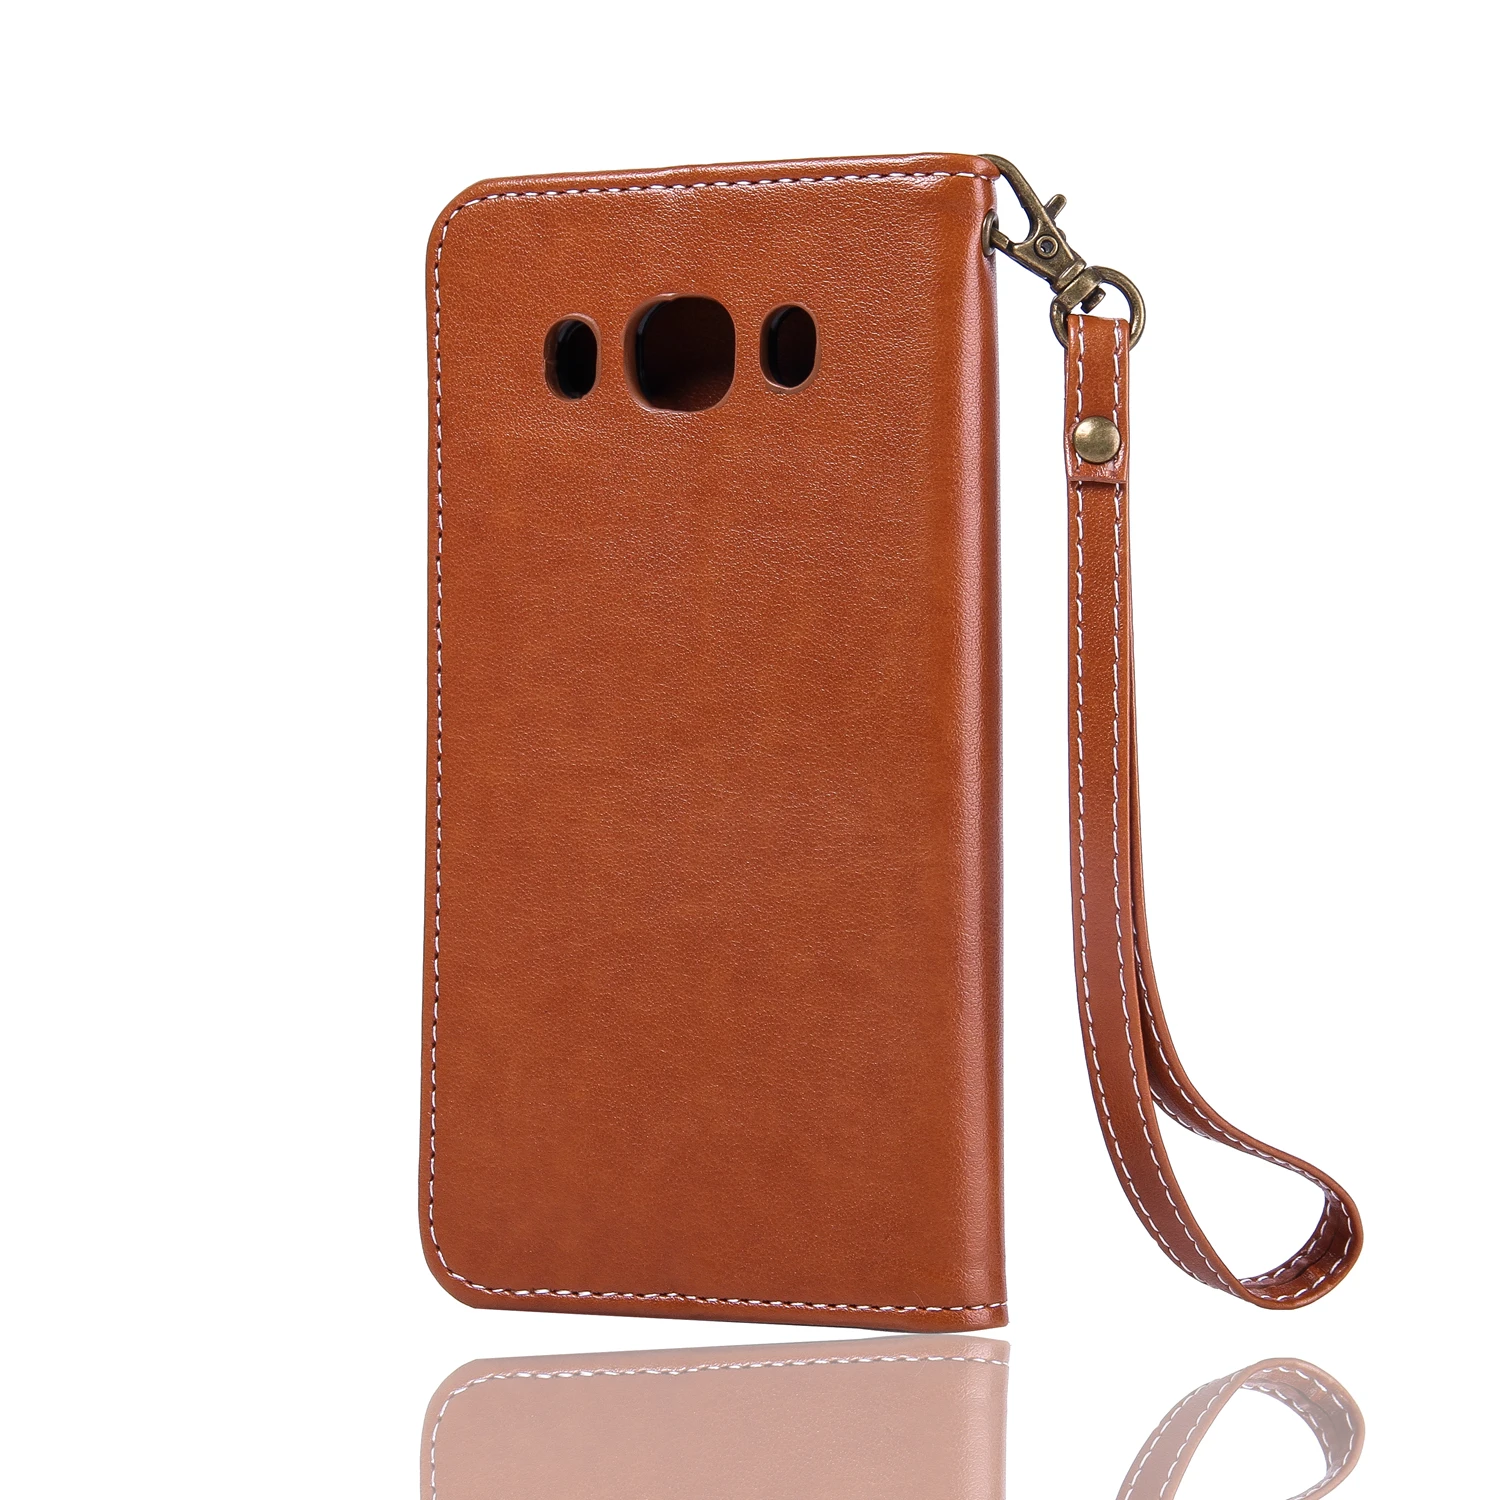 Роскошный кожаный чехол-портмоне на застежке в стиле ретро чехол для Coque samsung Galaxy J5 чехол J510 J510F SM-J510F чехол для телефона для samsung J5 сумка